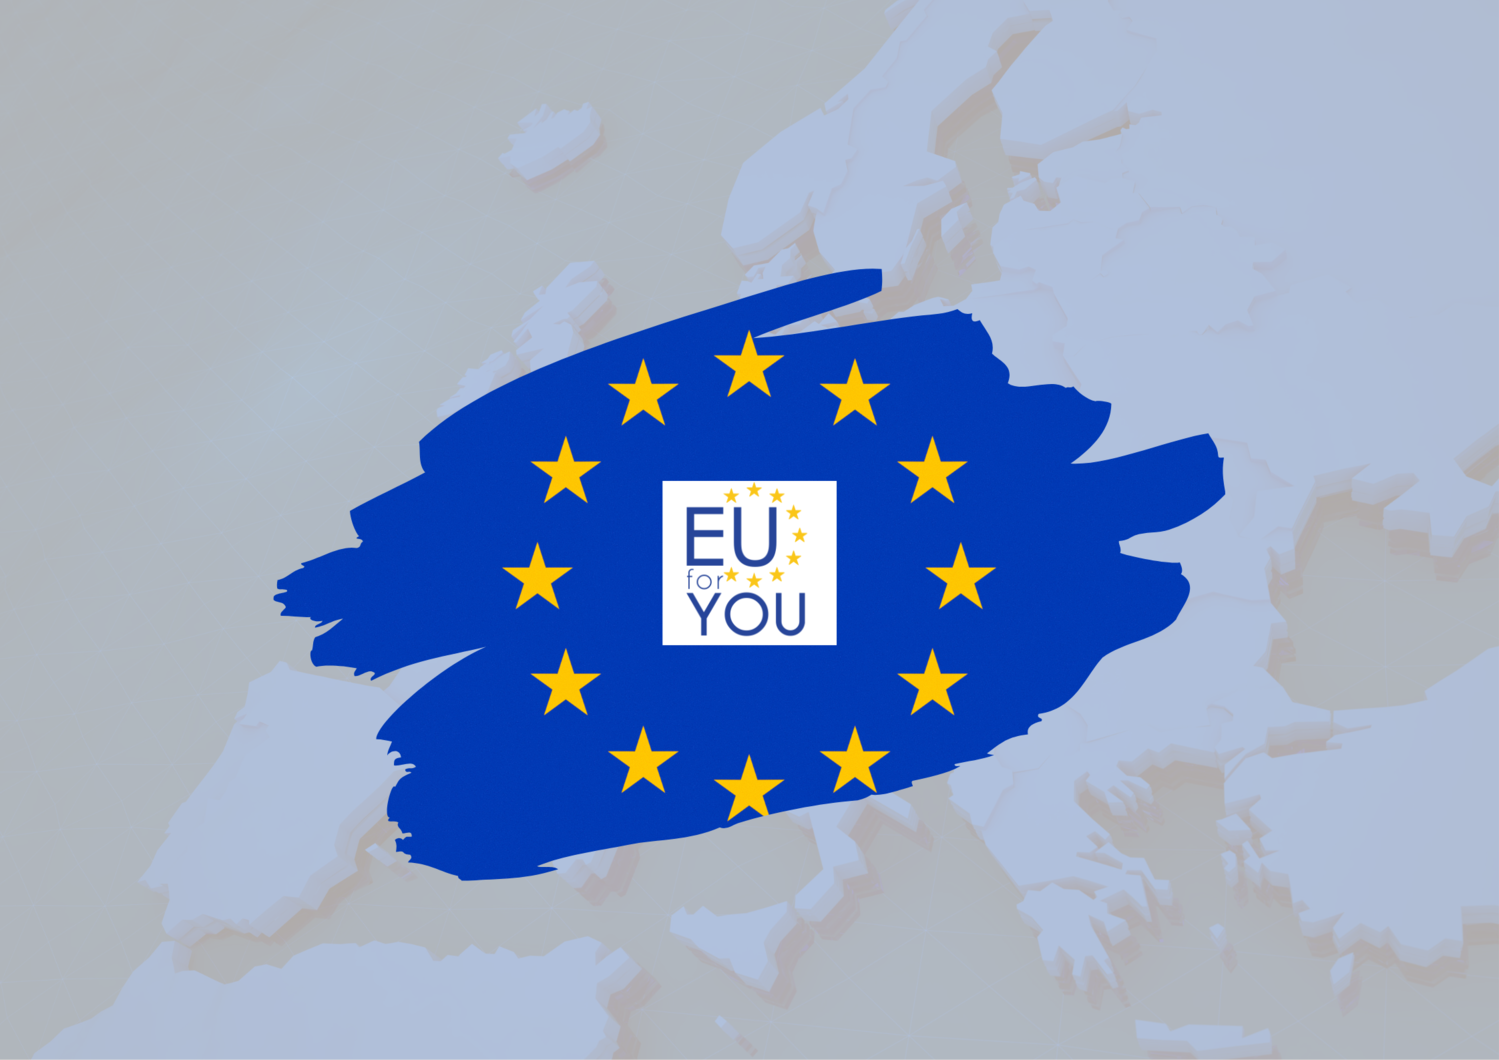 EU for You